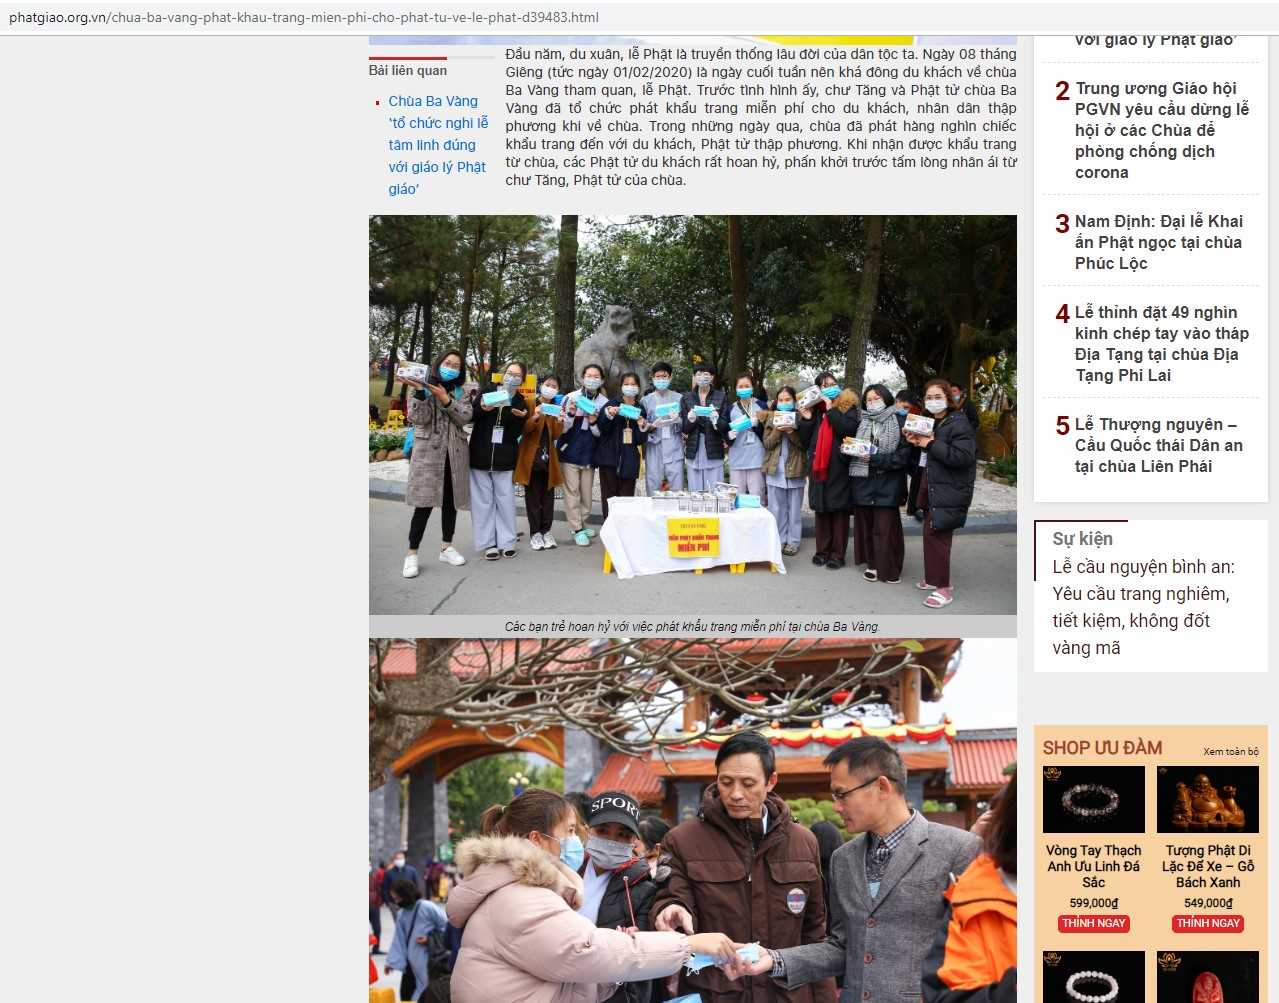 Hình ảnh Chùa Ba Vàng phát khẩu trang miễn phí trên trang phatgiao.org.vn